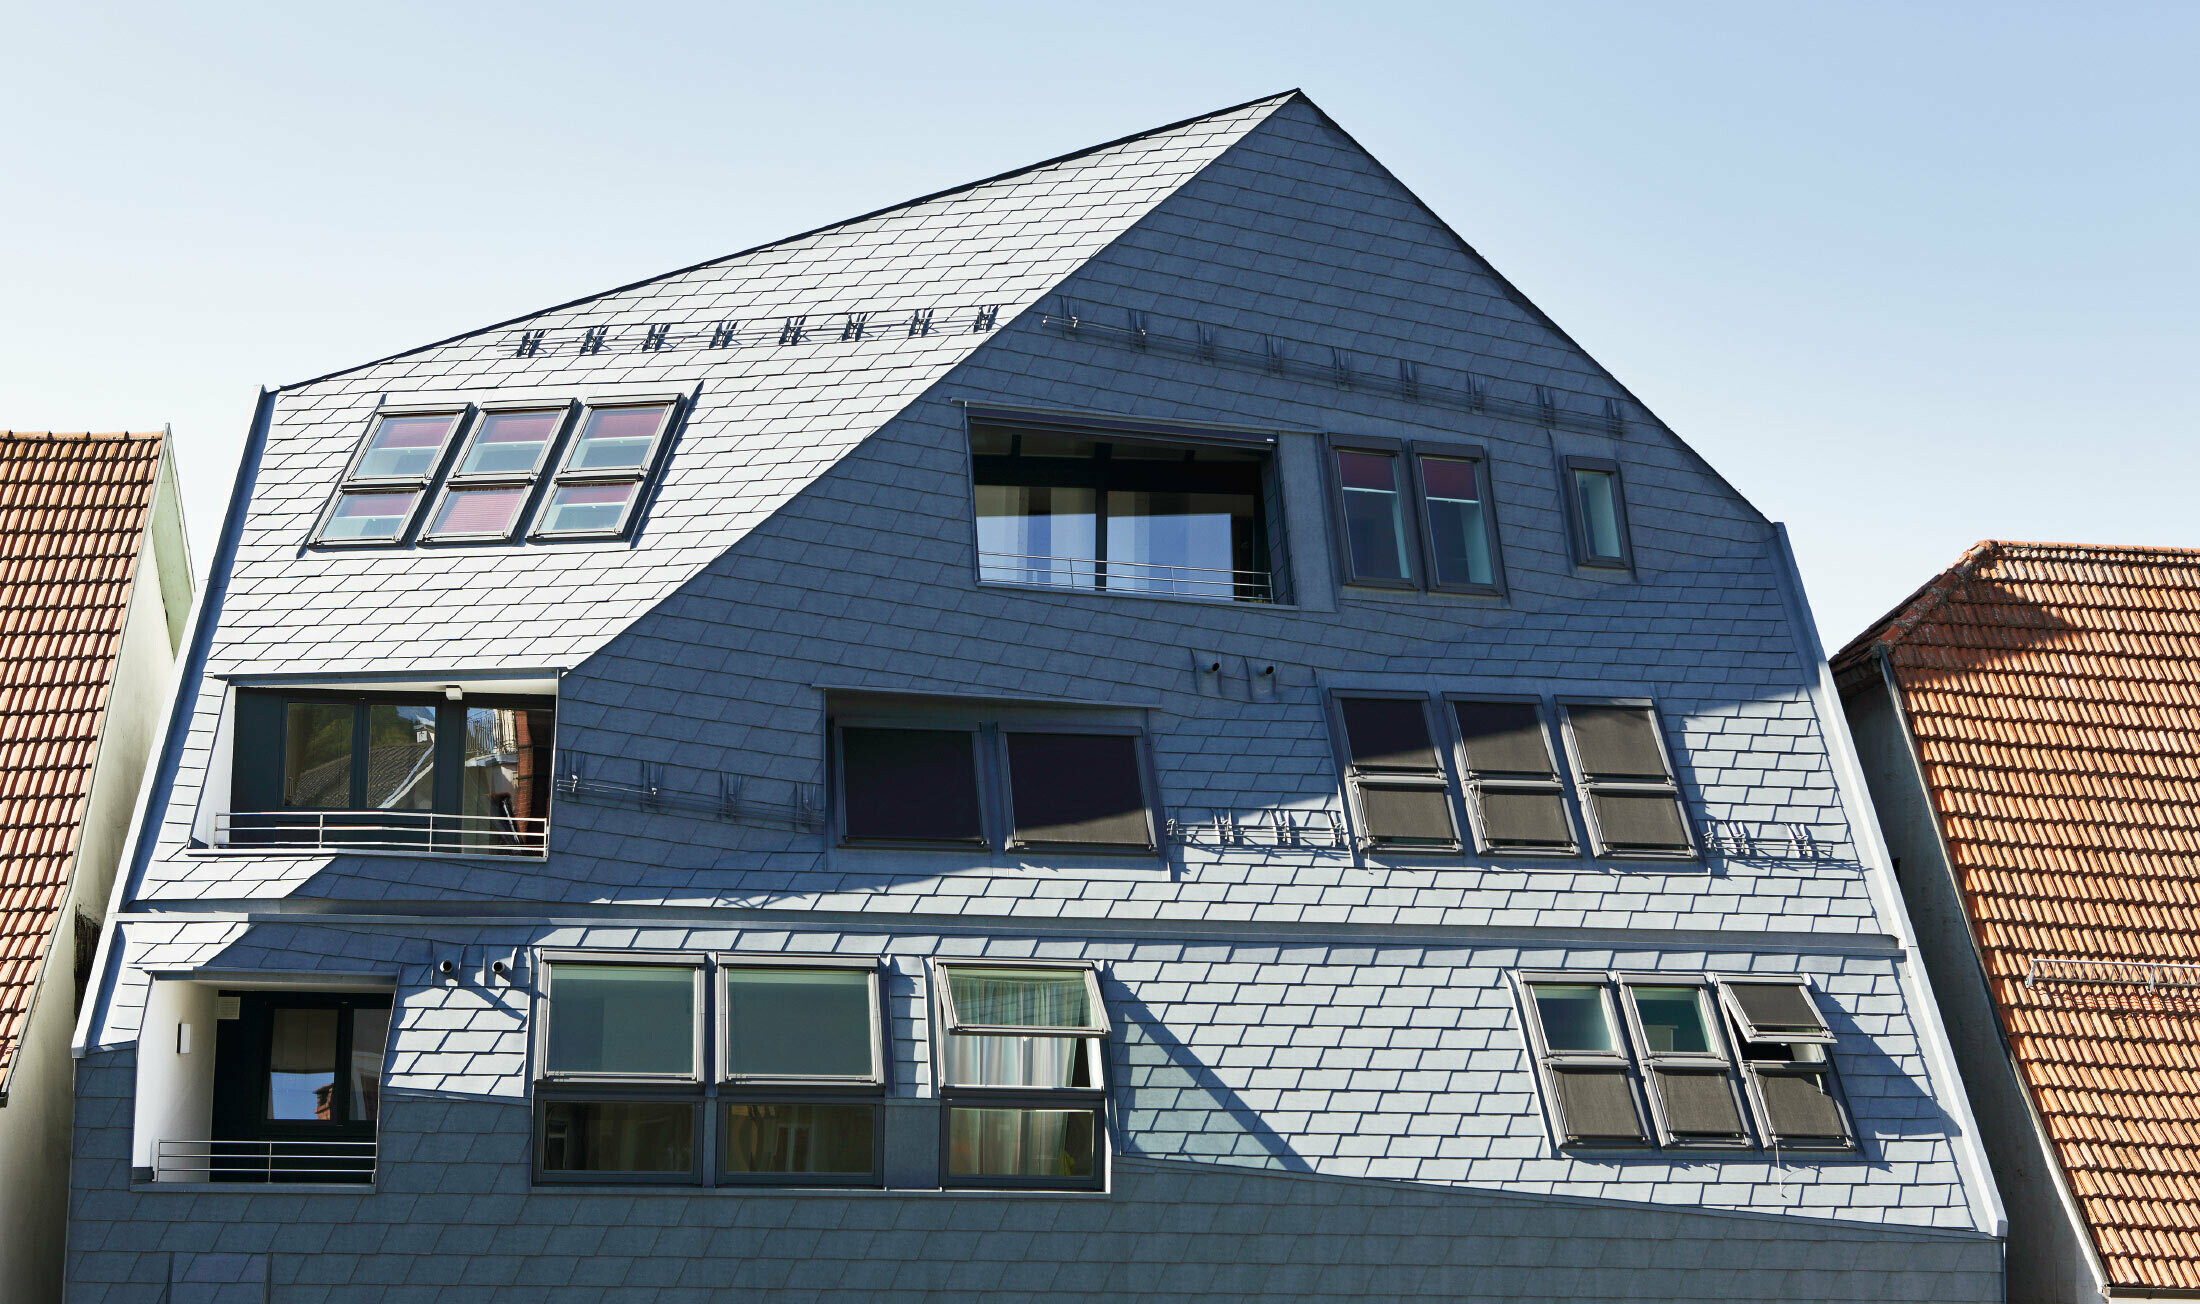 Galerijska kuća s prelomljenom fasadnom površinom, obložena s PREFA krovnom i zidnom šindrom u P.10 kameno sivoj boji s dosta prozora